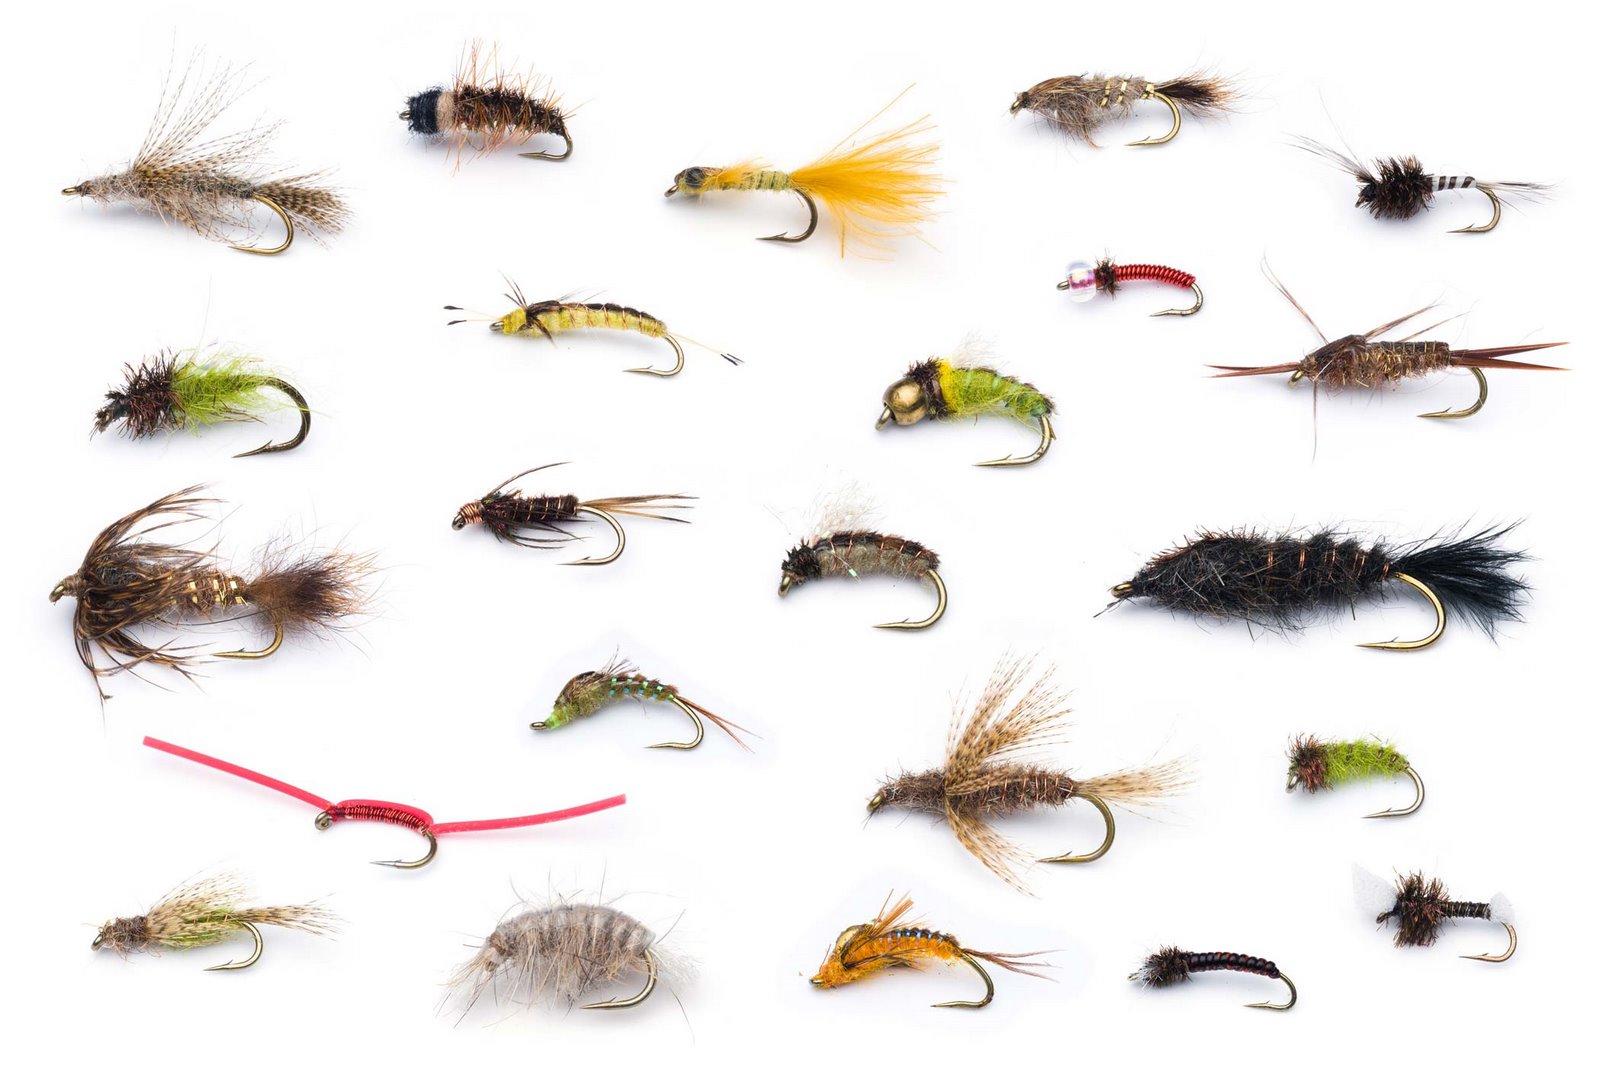 jenis-jenis dan macam-macam bentuk flies atau umpan buatan dalam mancing teknik fly fishing